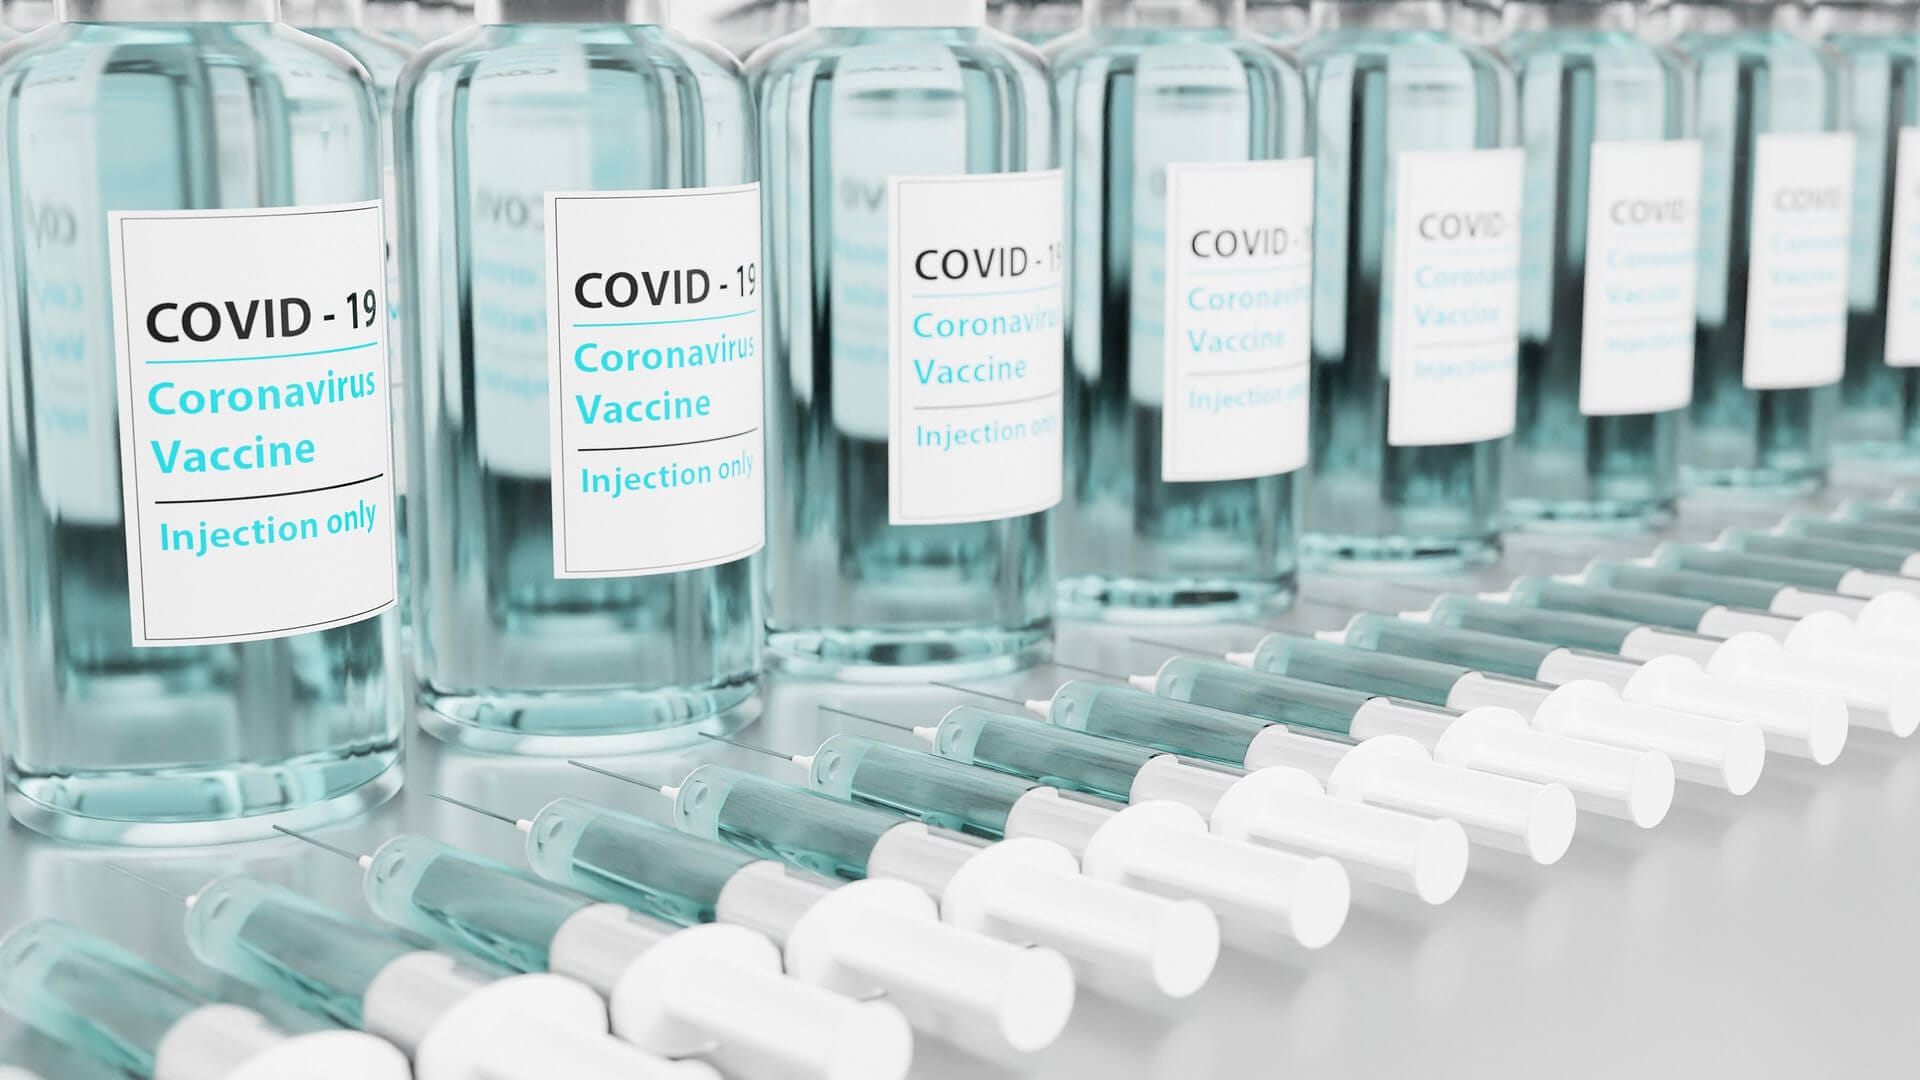 recipientes que contienen vacuna contra coronavirus (imagen ilustrativa) / Este artículo habla acerca de la farmacia Rite Aid y la aplicación de vacuna covid 19 a migrantes indocumentados